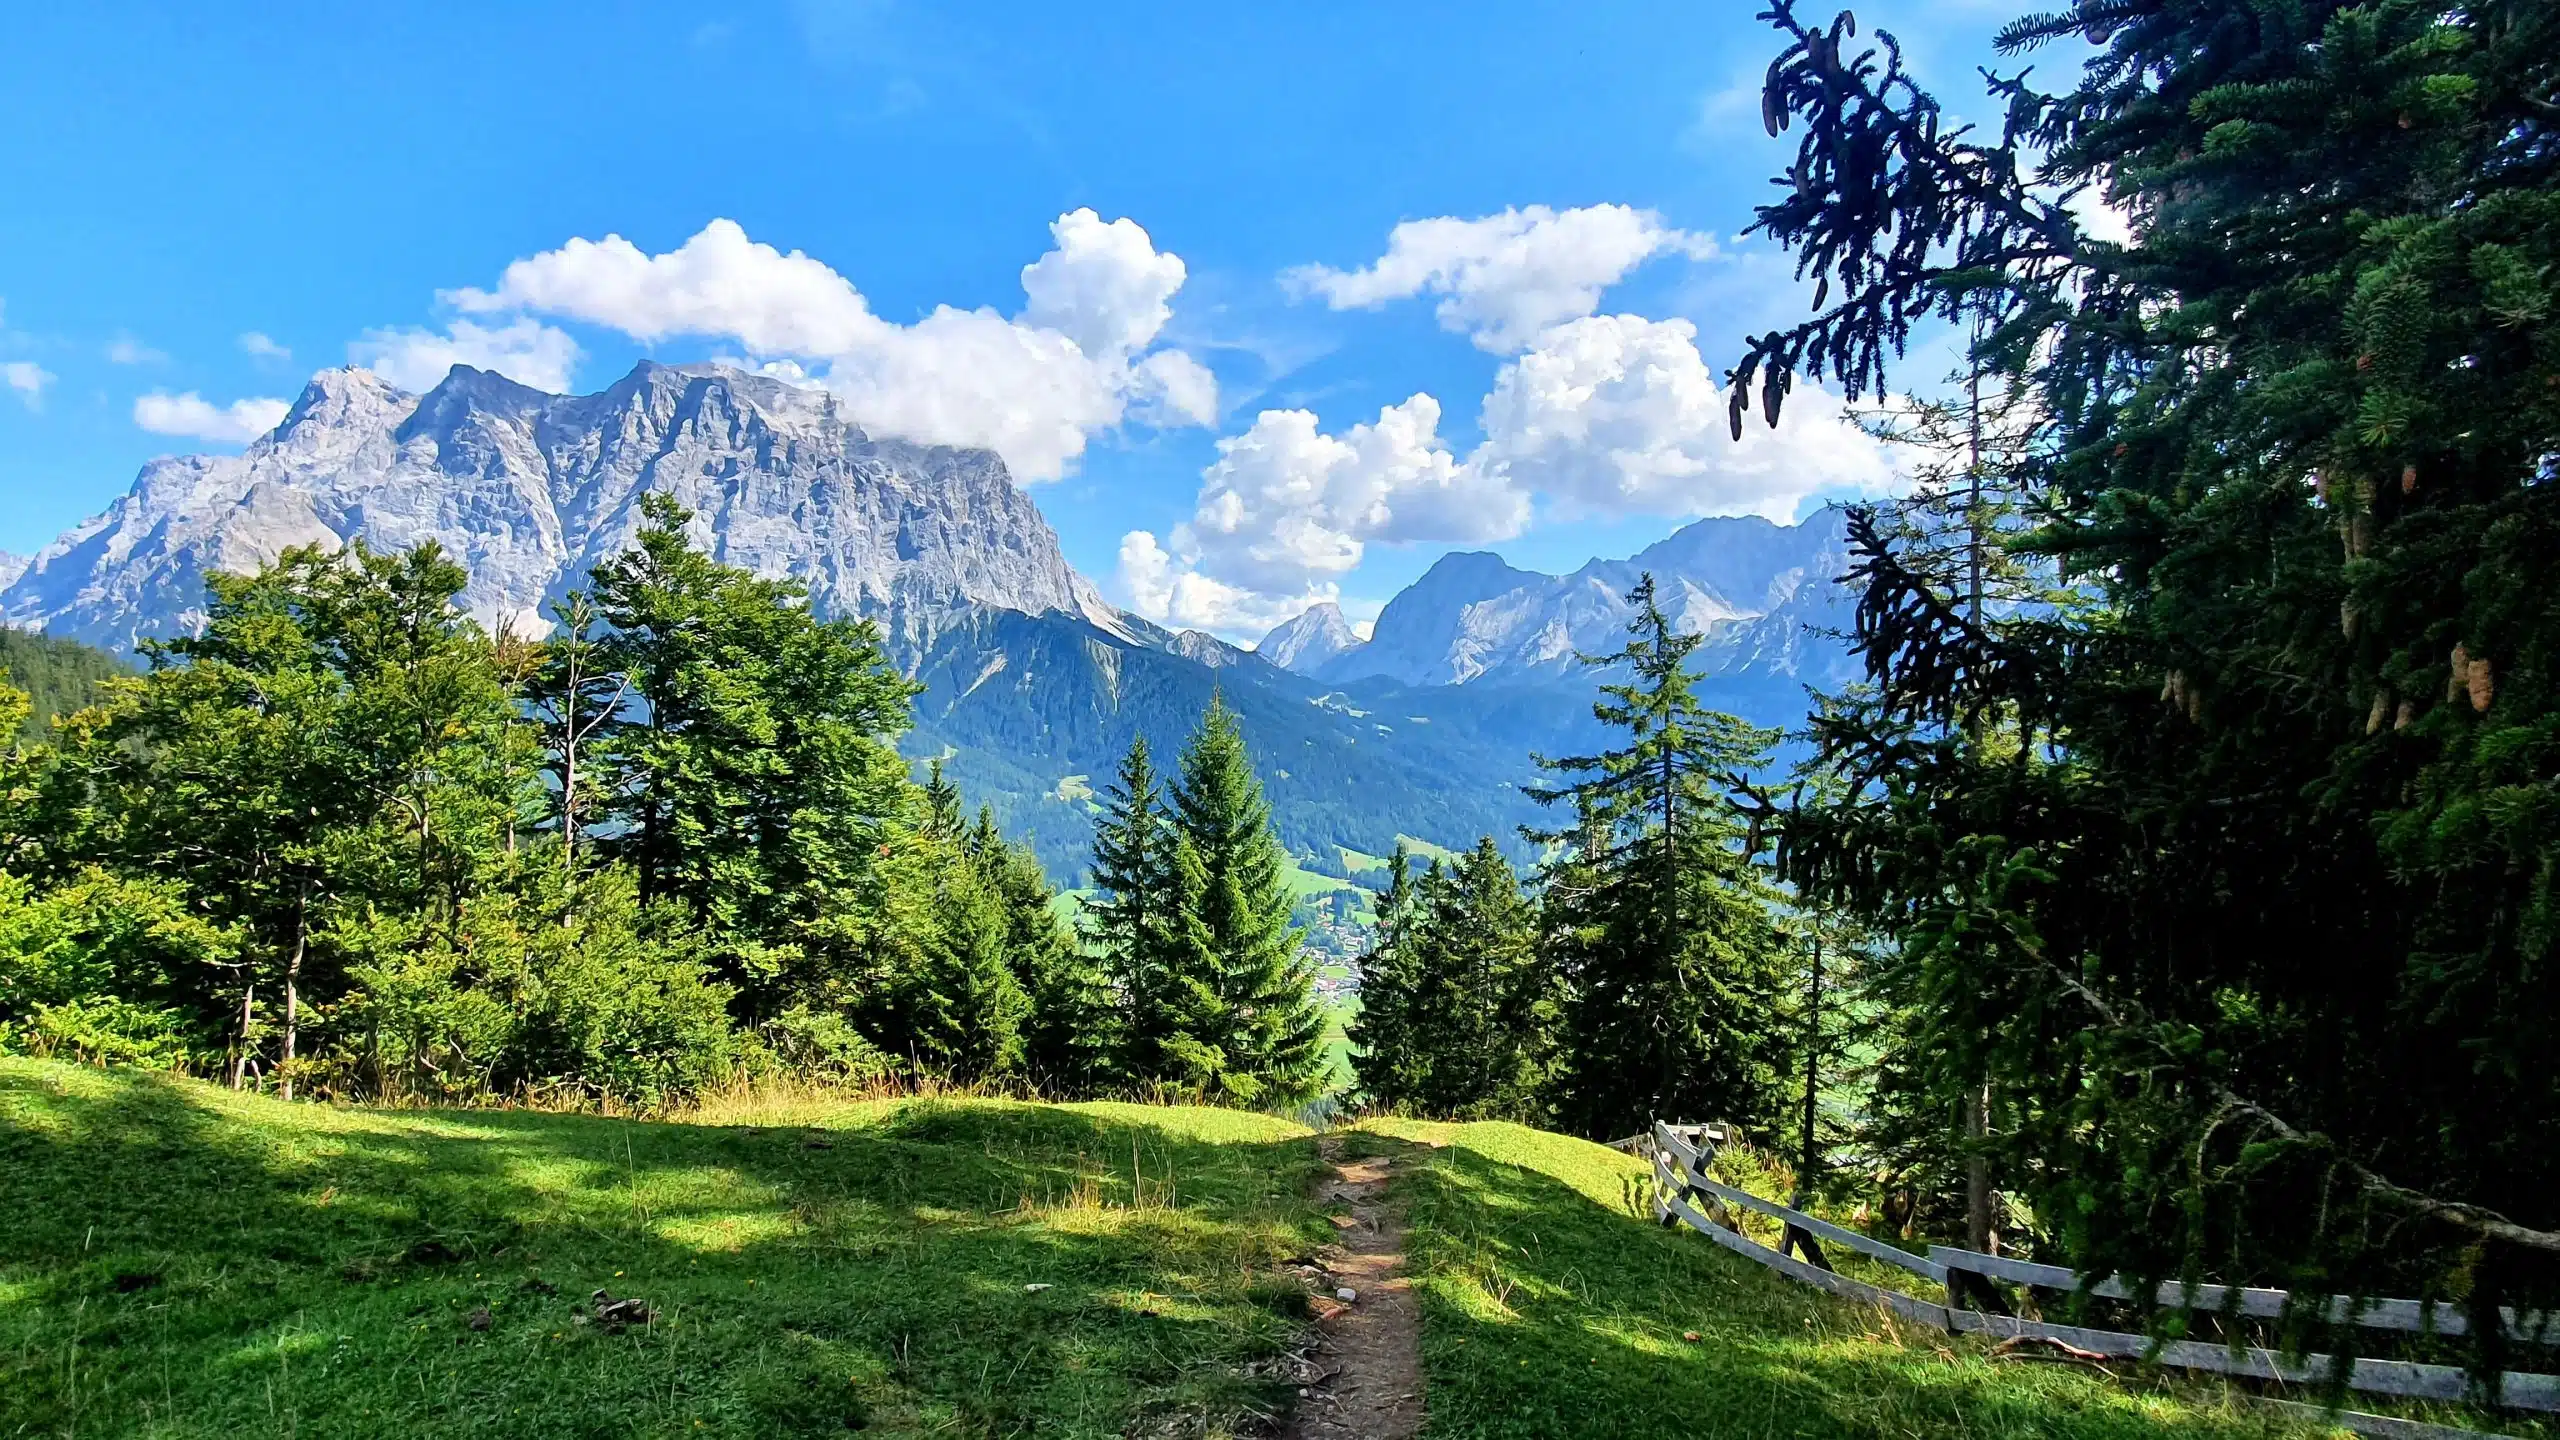 Oostenrijk | TuftlAlm: wandelen in Ehrwald met zomerse temperaturen